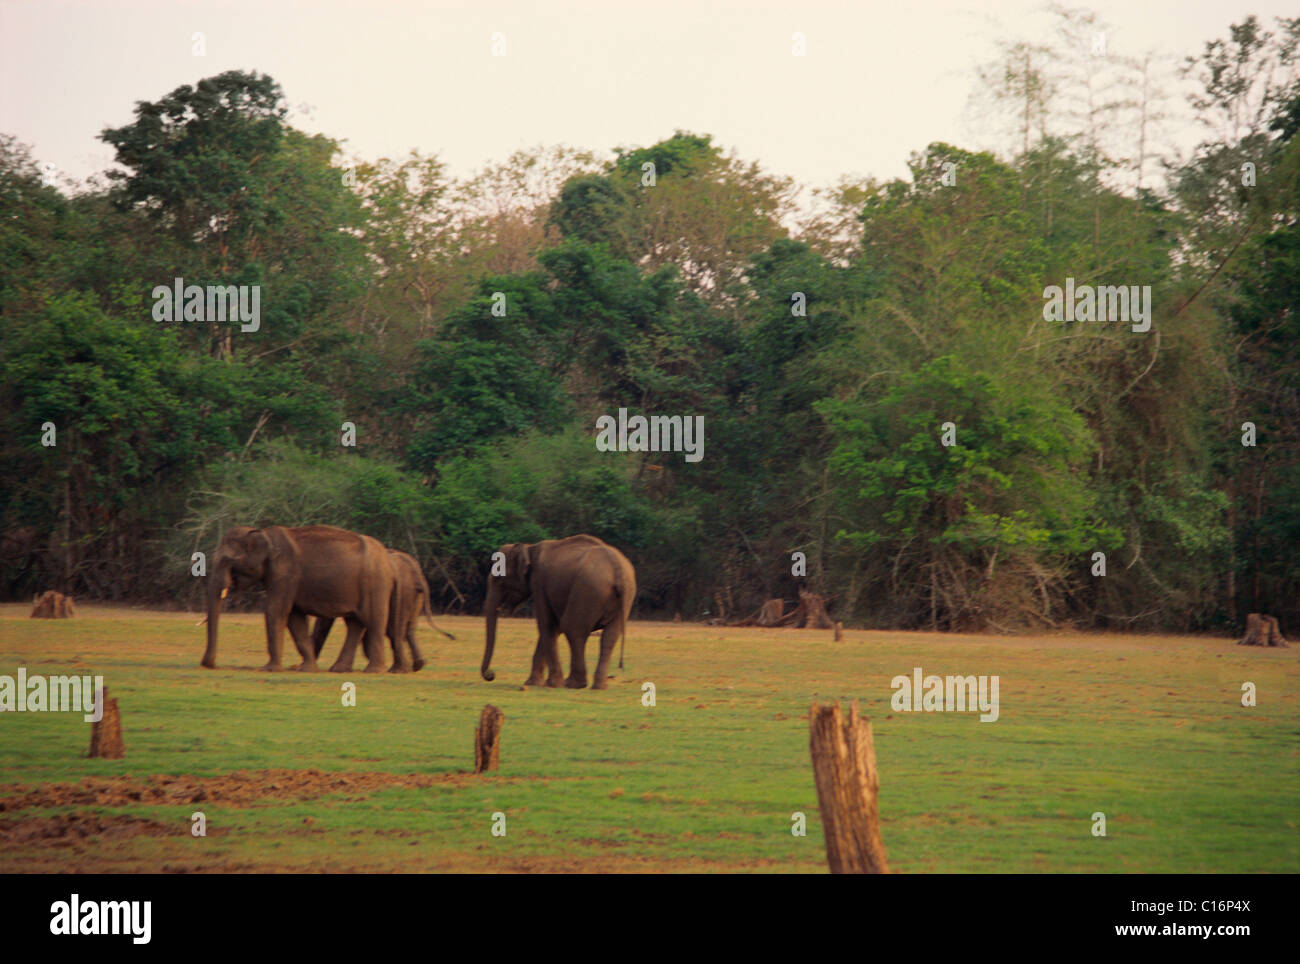 Trois éléphants indiens (Elephas maximus indicus) dans une forêt, Bandipur National Park, Chamarajanagar, Karnataka, Inde Banque D'Images